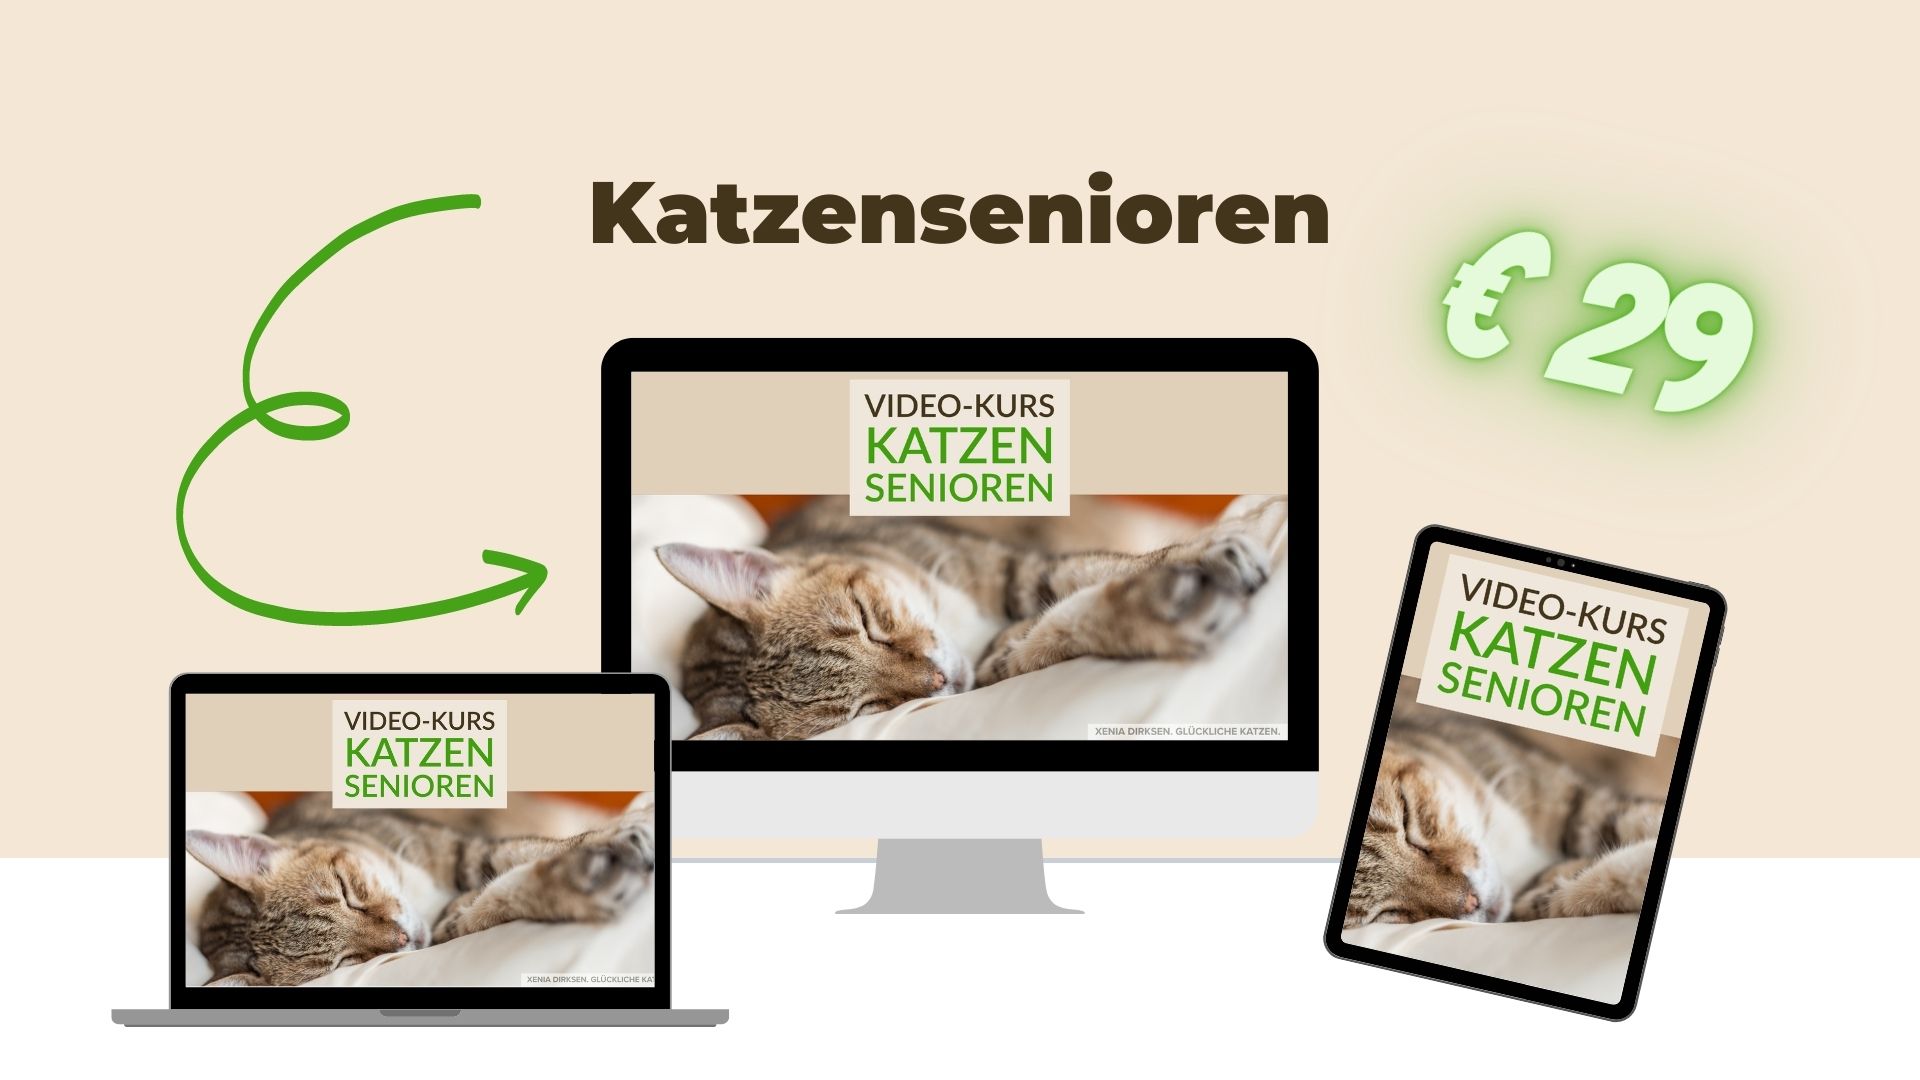 Der Onlinekurs "Katzensenioren" für 29 Euro